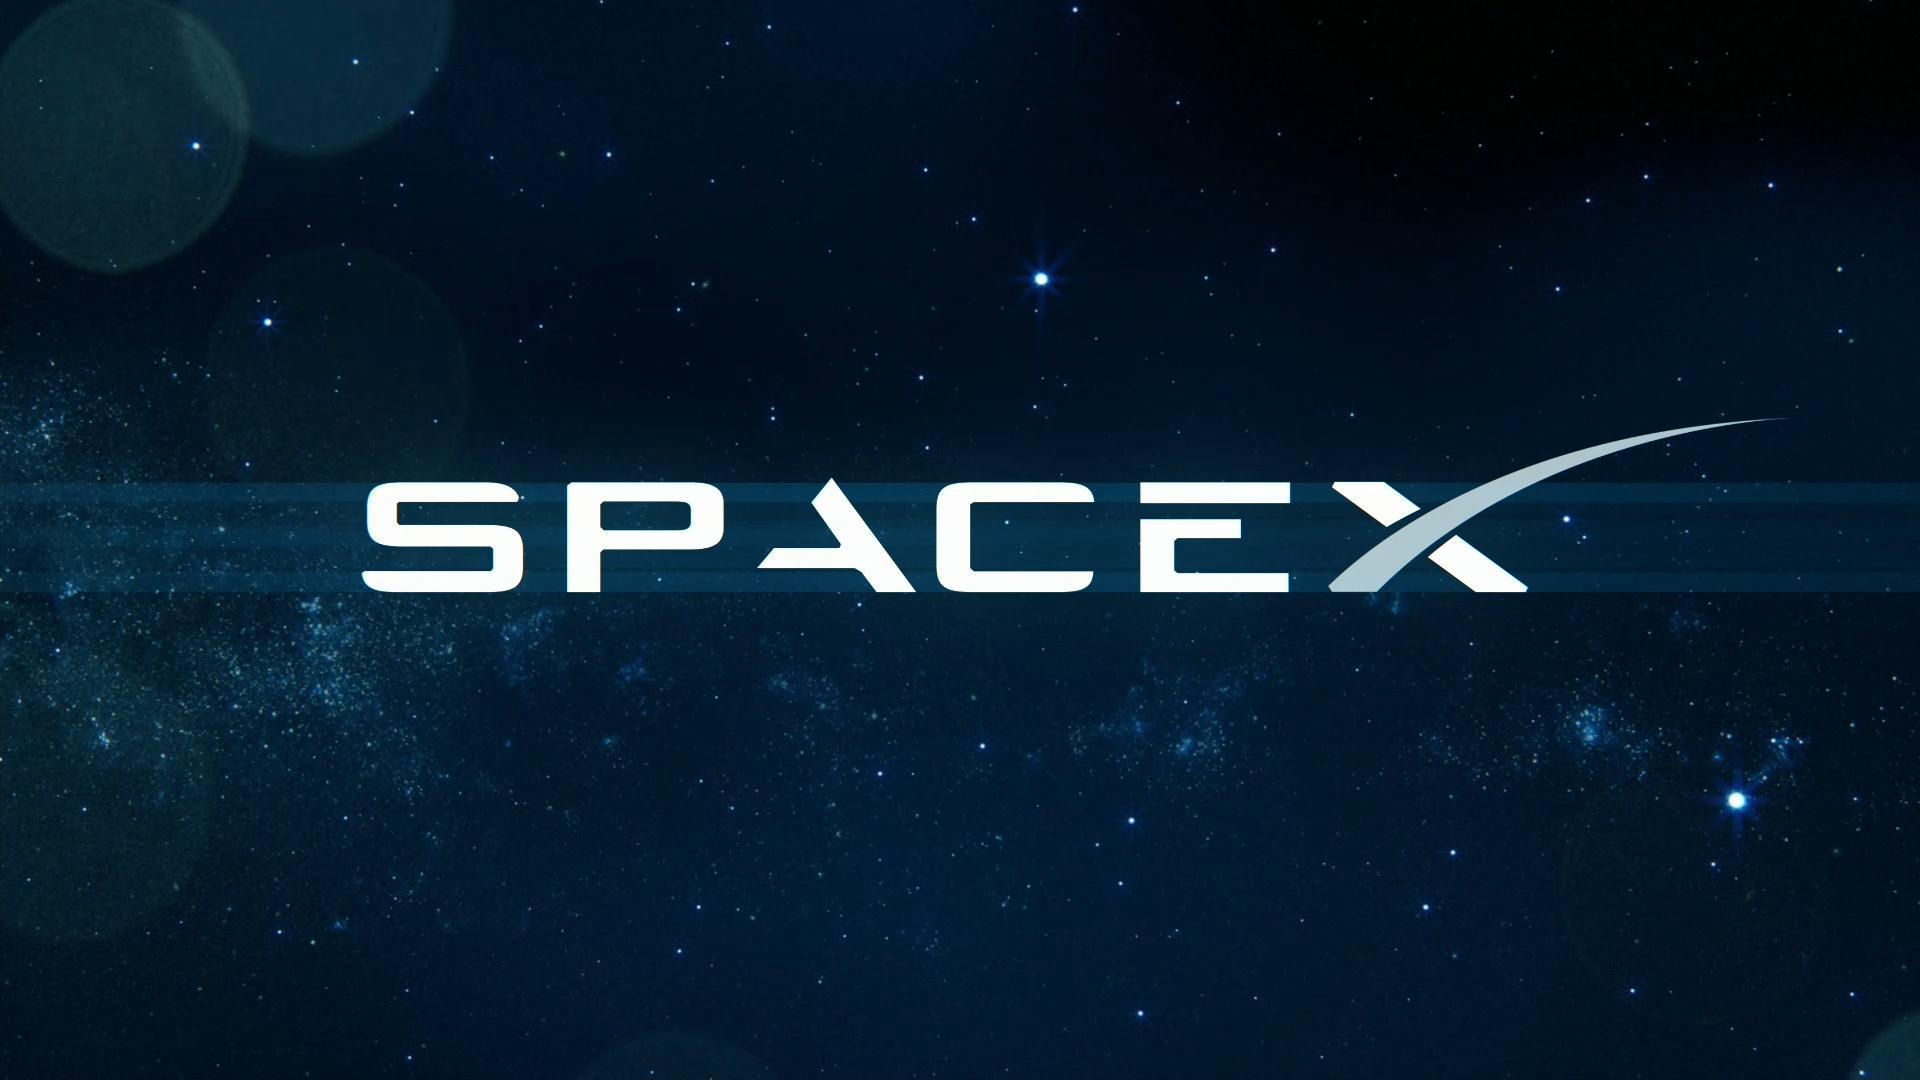 SpaceX Wallpapers: Nếu bạn đam mê công nghệ và vũ trụ, những bức hình nền về SpaceX chắc chắn sẽ khiến bạn say đắm. Hãy khám phá bộ sưu tập tuyệt đẹp này để tìm ra bức hình nền ưng ý nhất!